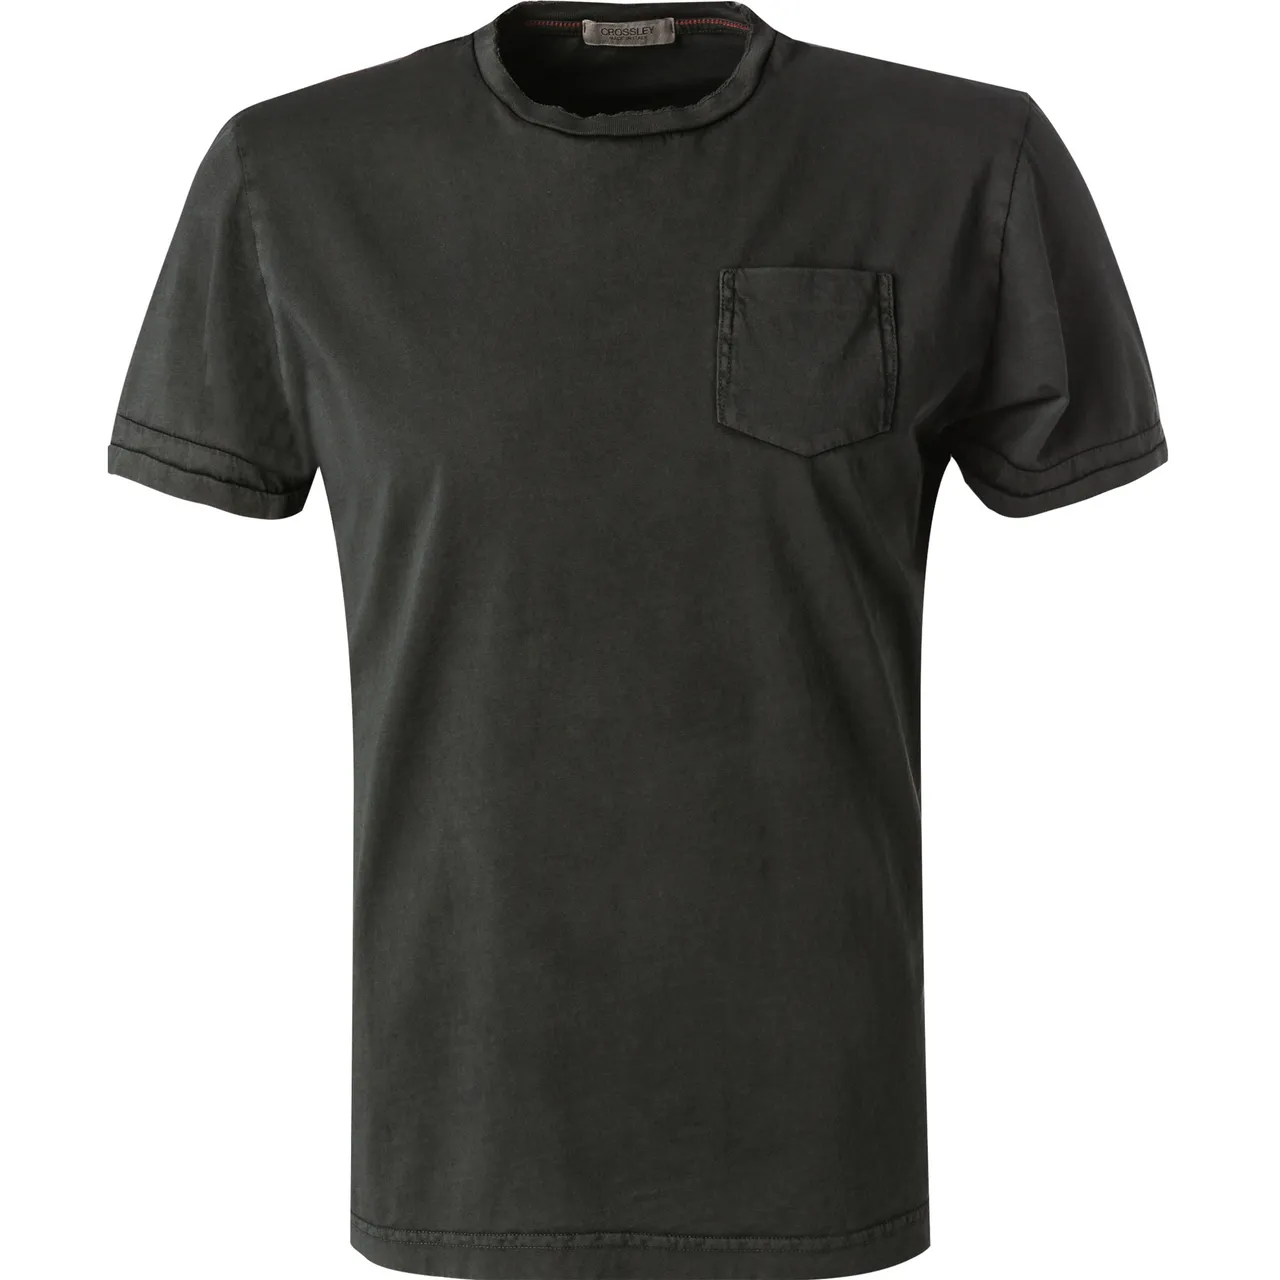 CROSSLEY Herren T-Shirt grau Baumwolle